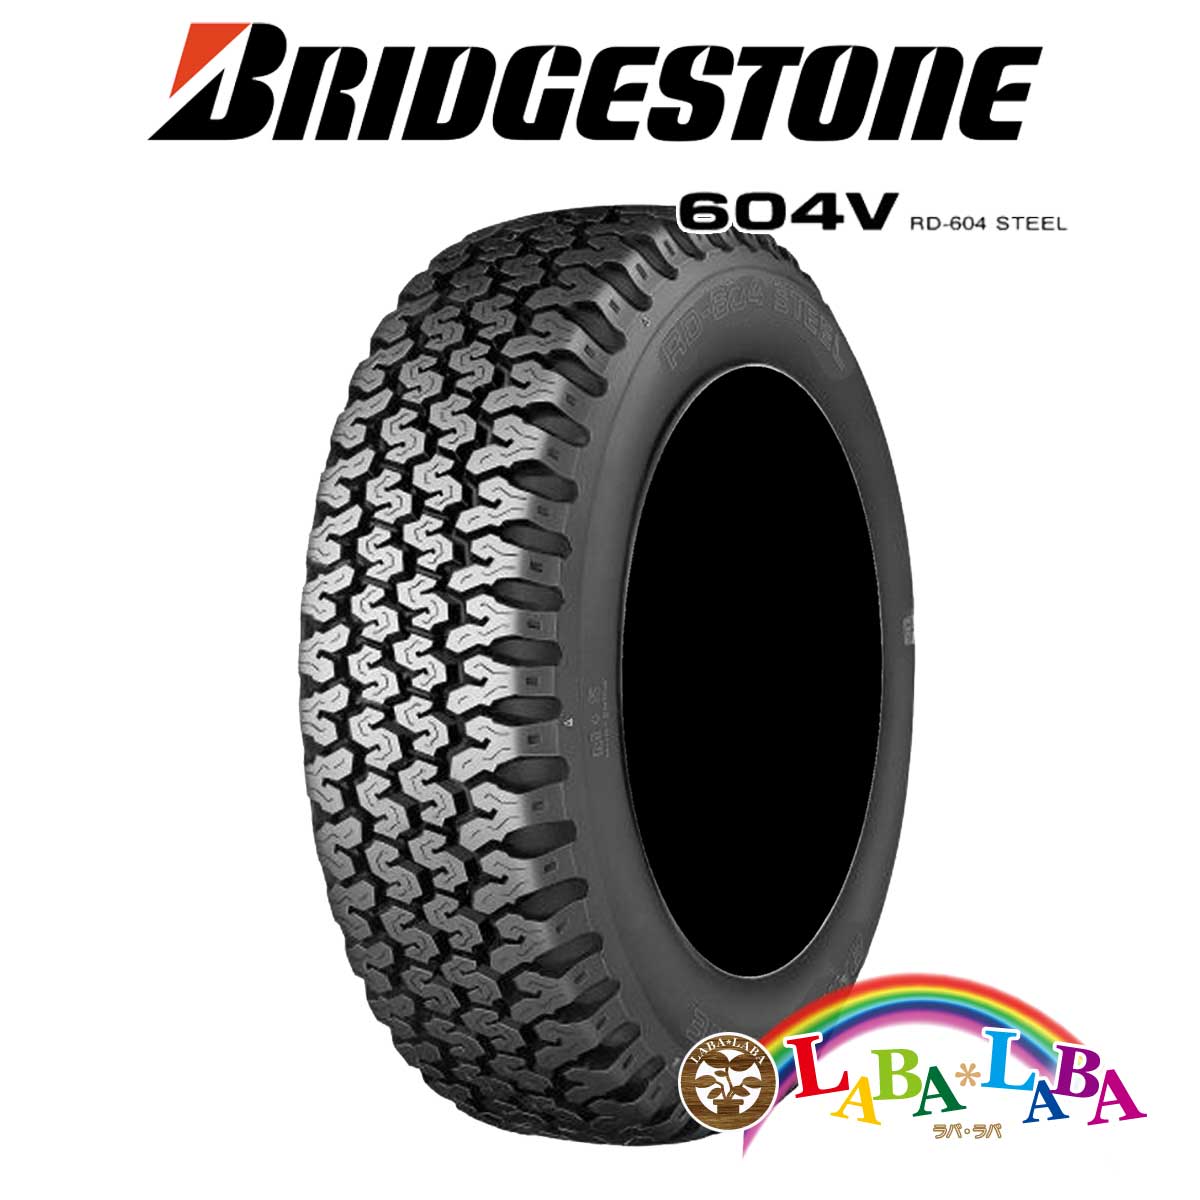 楽天市場 Bridgestone ブリヂストン 604v 145r12 6pr サマータイヤ 軽トラ バン 4本セット ラバラバ 楽天市場店